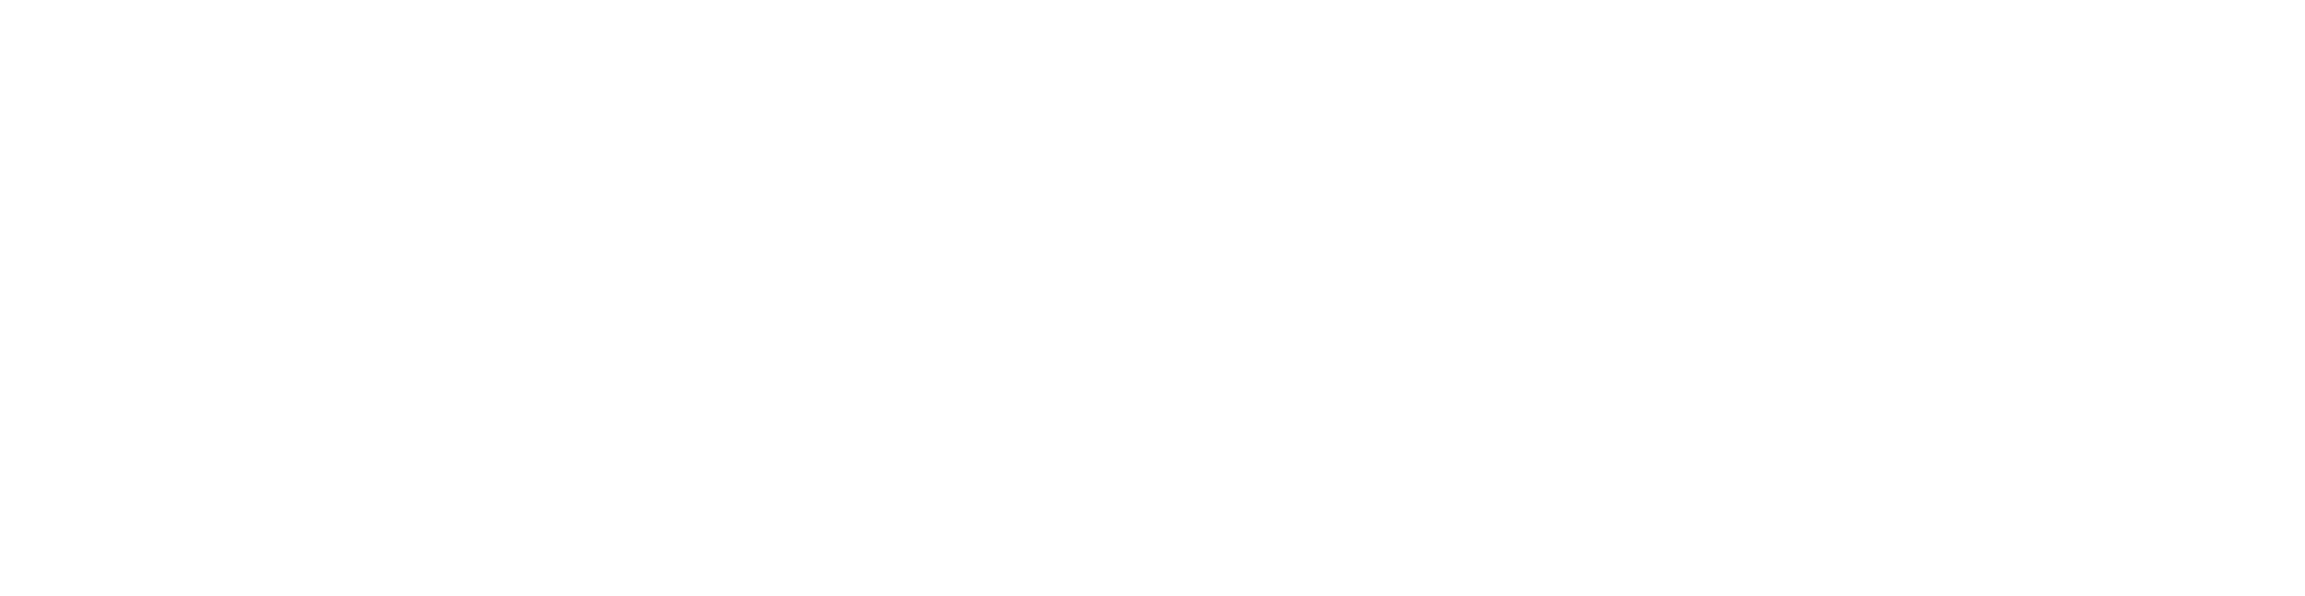 シキシマ醤油株式会社ロゴ